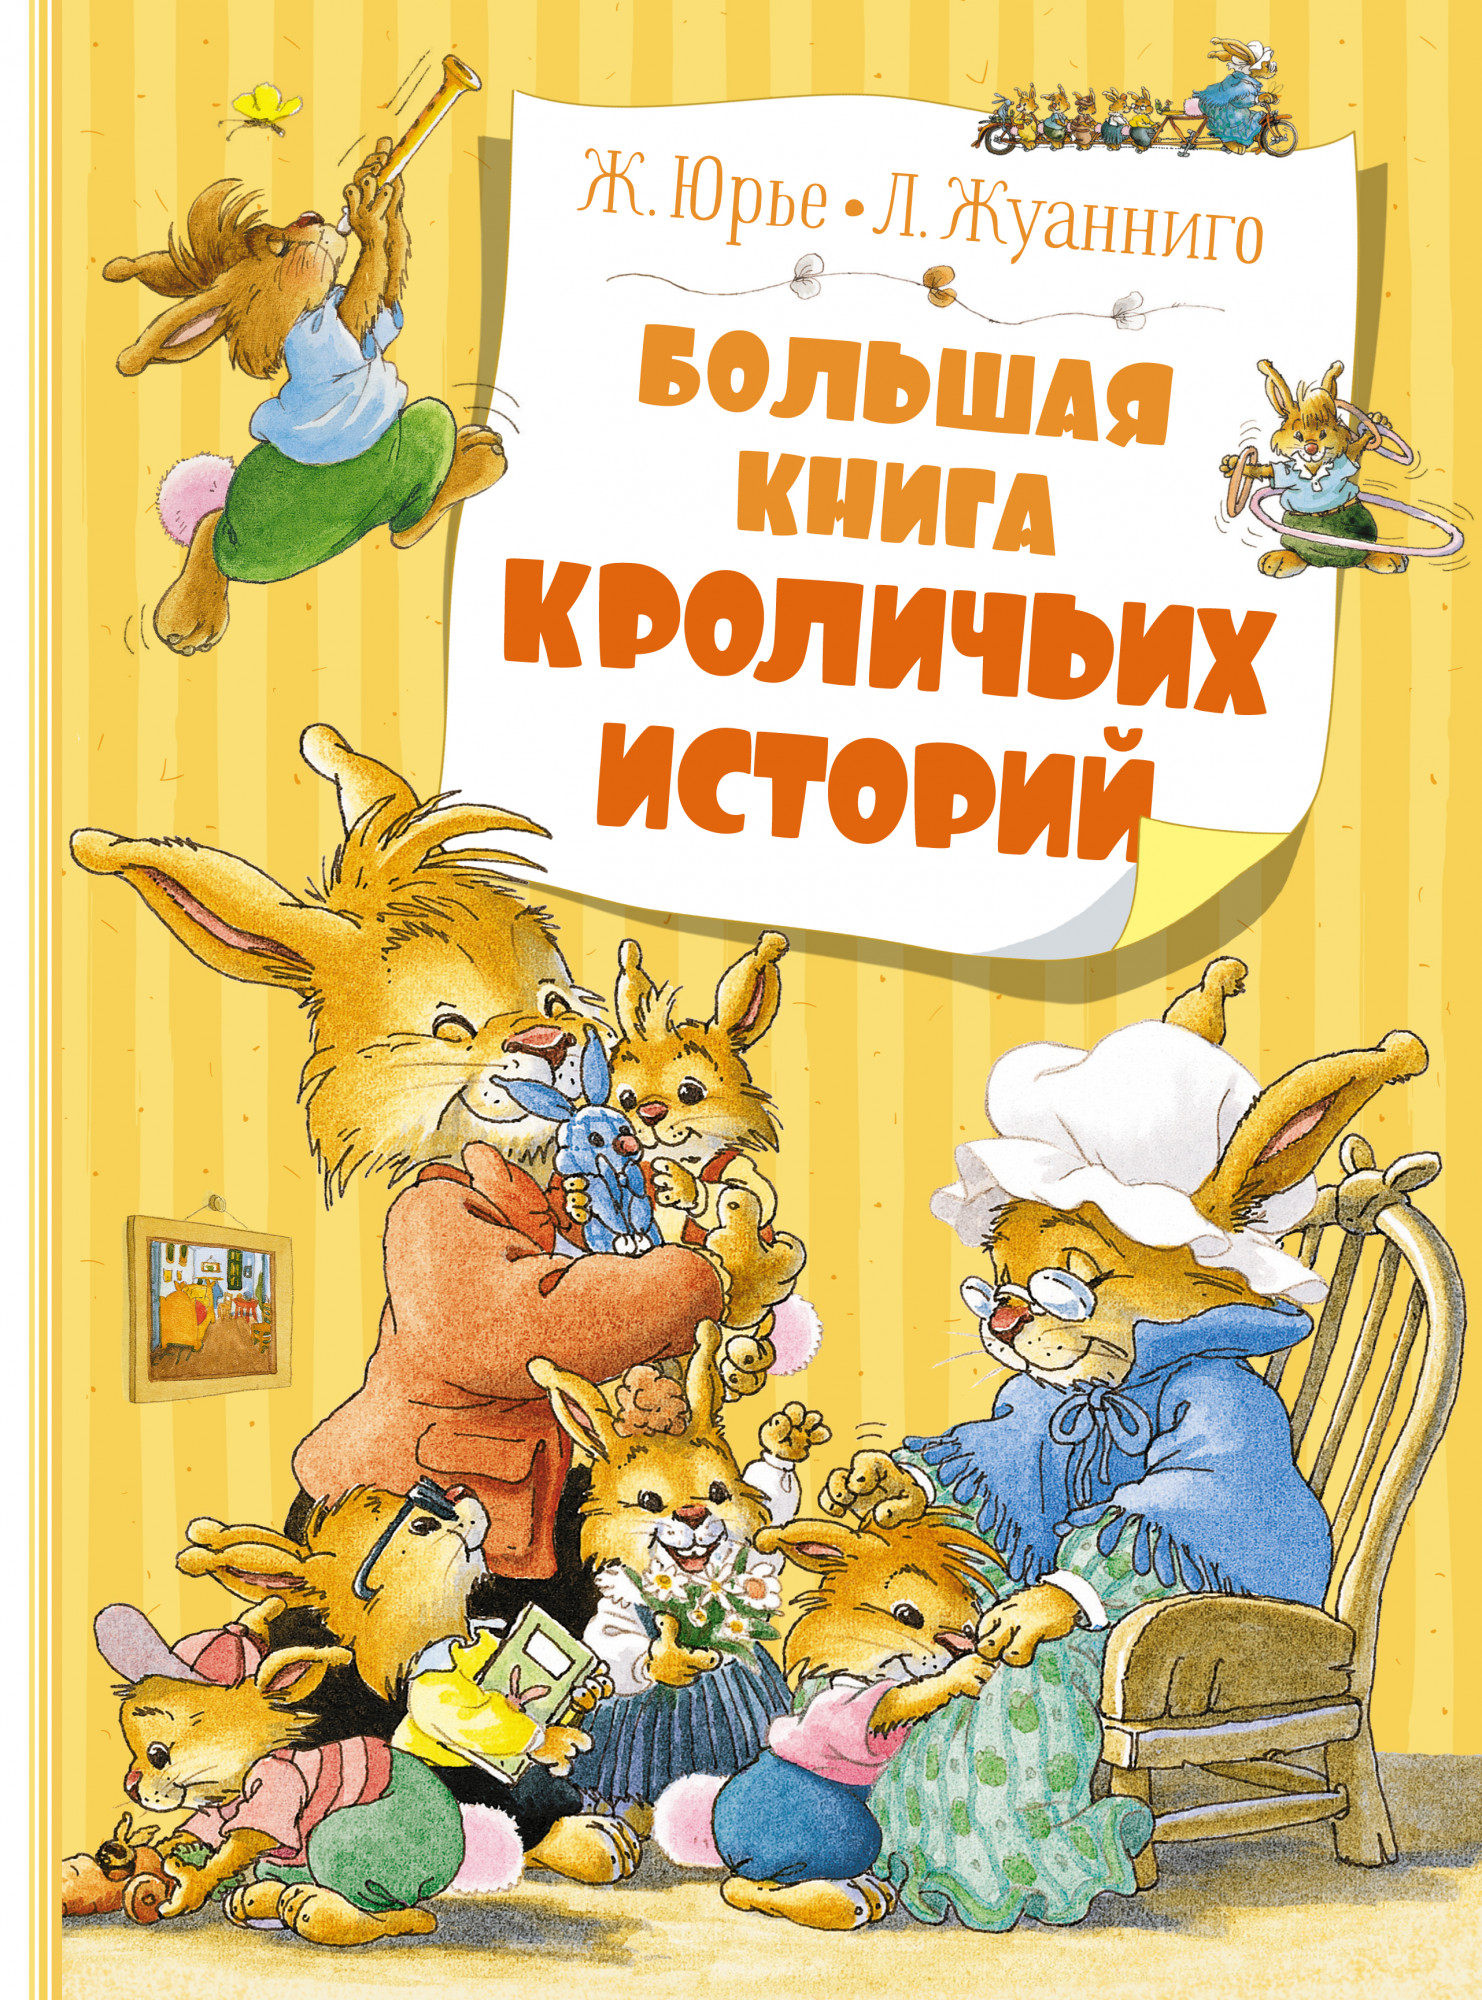 Юрье Женевьева Большая книга кроличьих историй (новое оформление) юрье женевьева большая книга кроличьих историй